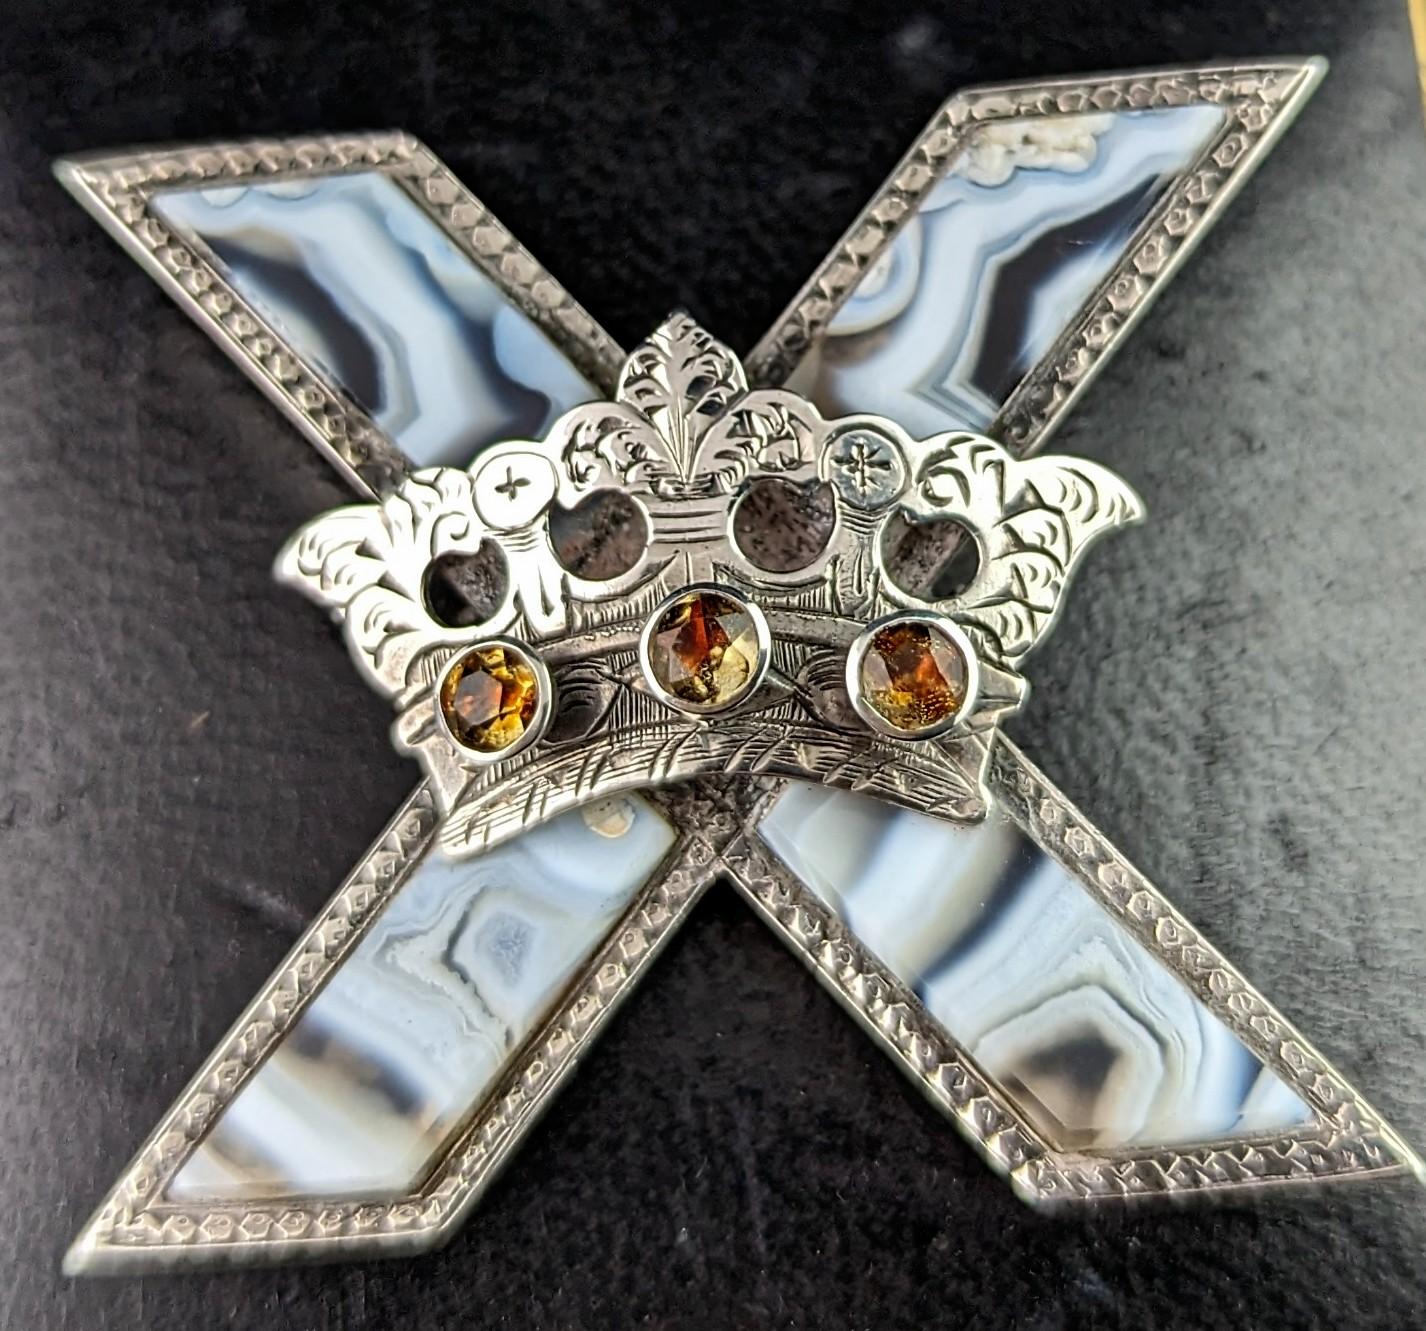 Wir lieben diese einzigartige antike, viktorianische Ära schottischen Achat und Silber Saltire Kreuz und Krone Brosche.

Er hat die Form eines großen Kreuzes, das der schottischen Saltire- oder St. Andrews-Flagge nachempfunden ist, mit einer